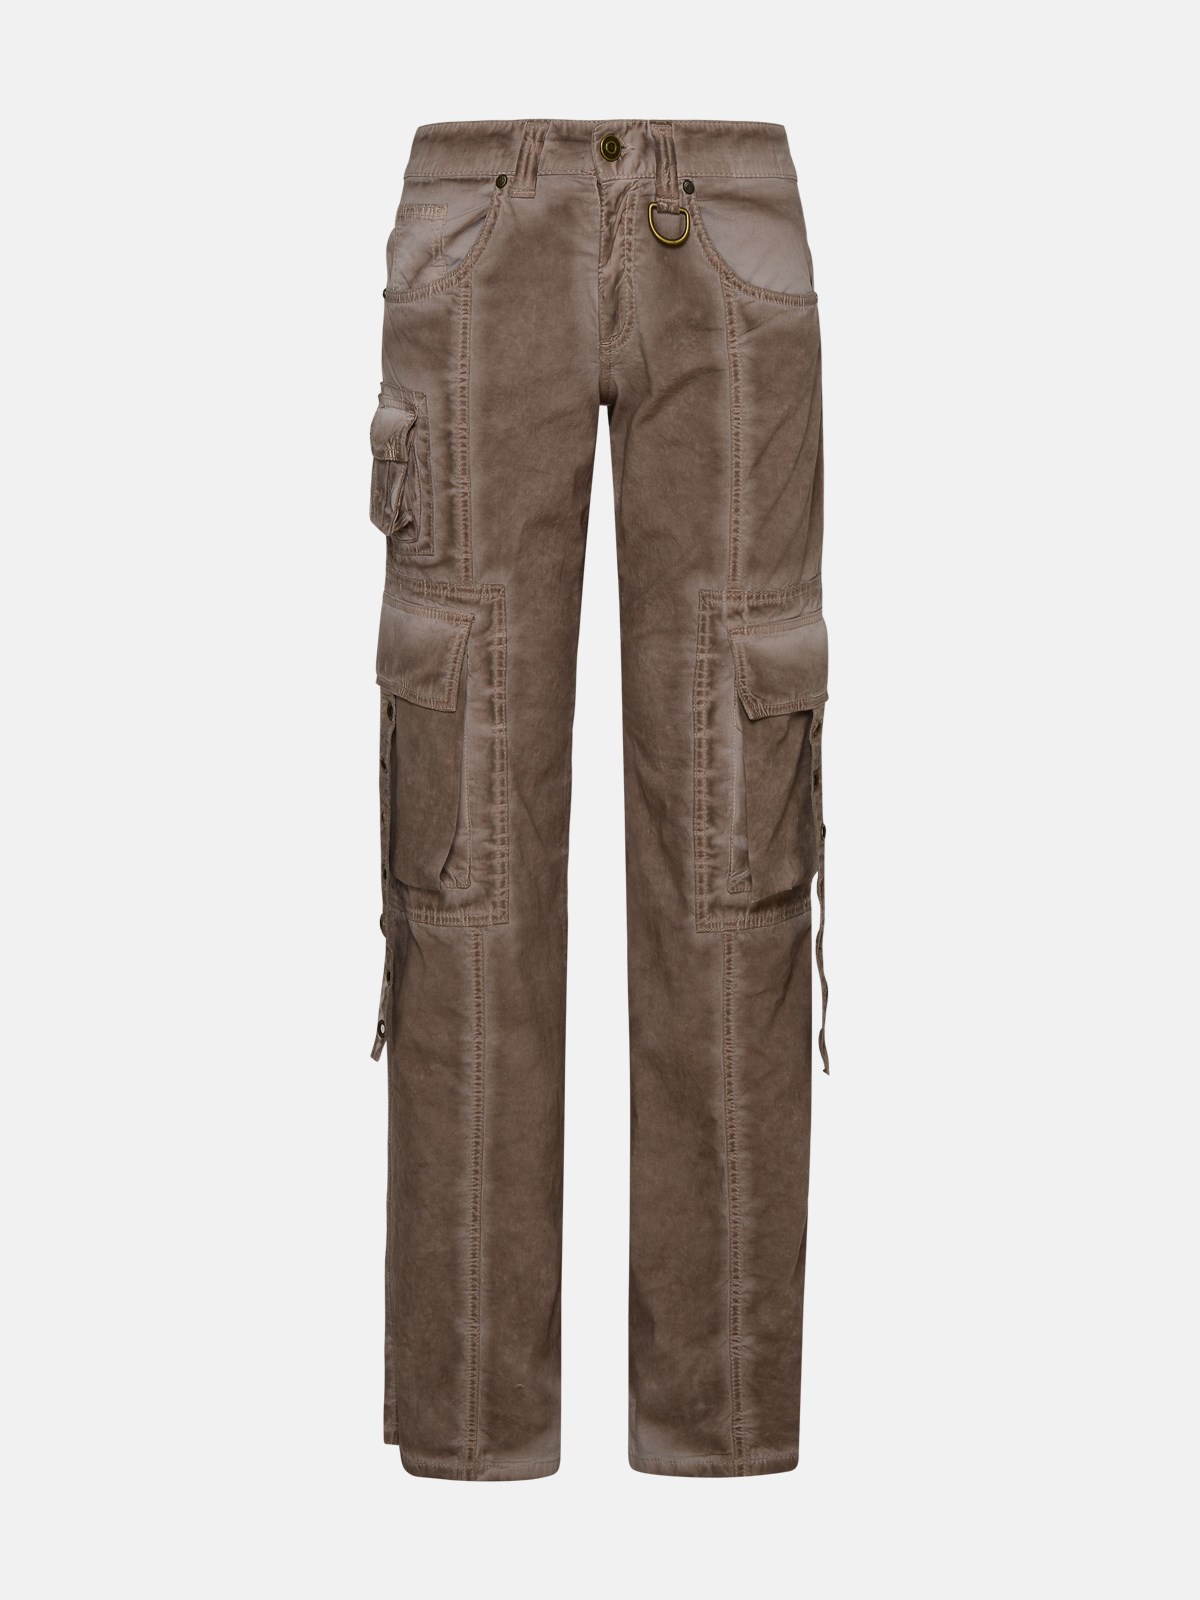 Blumarine Pantalone Cargo Tasche In Brown